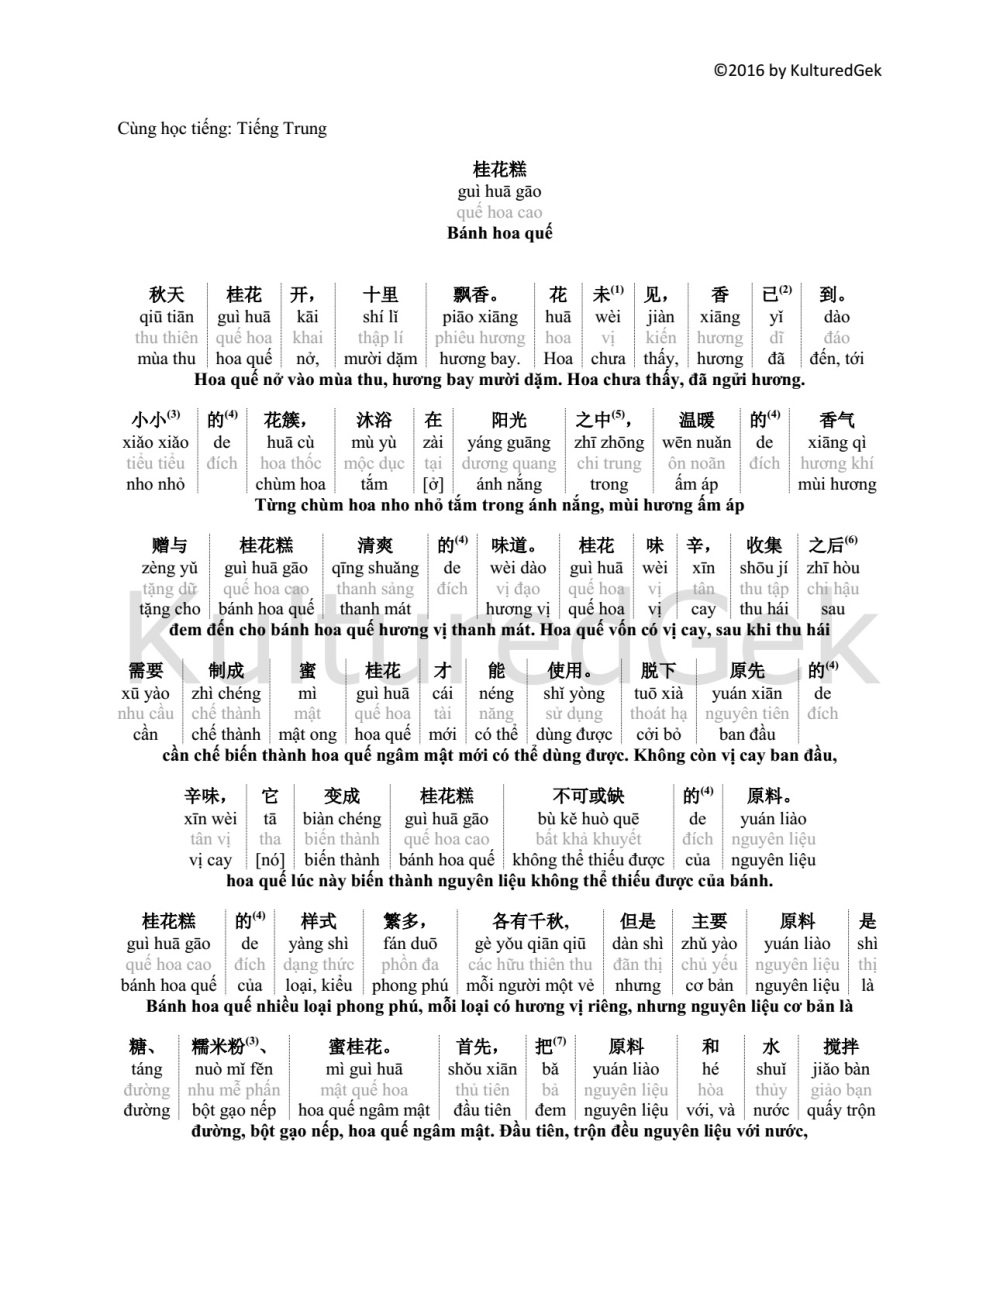 Cùng học tiếng Tiếng Trung 桂花糕1